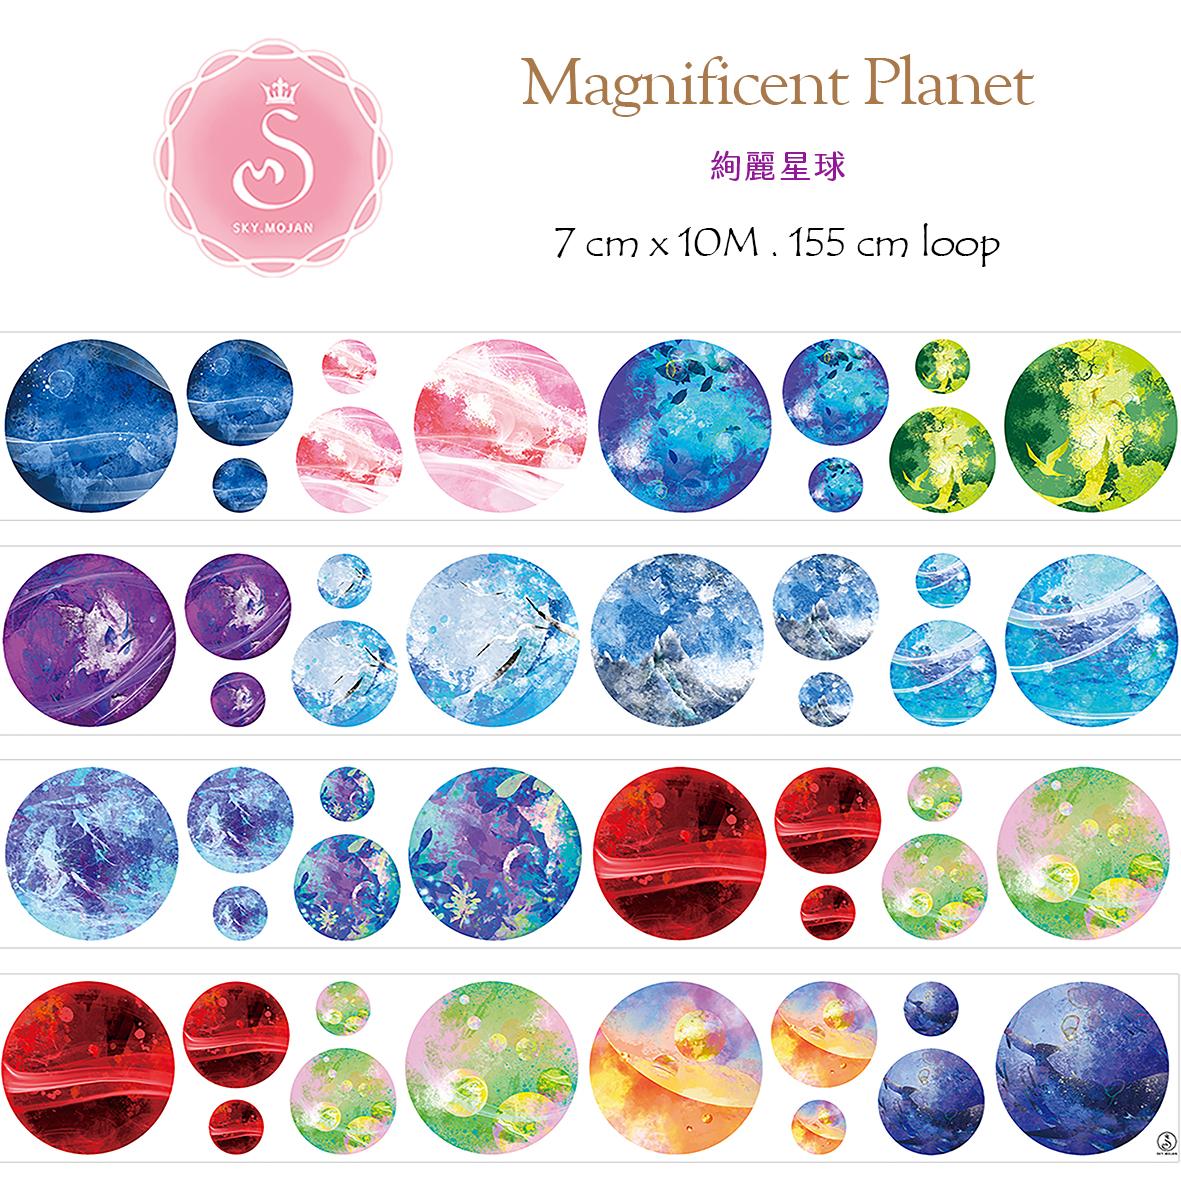 絢麗星球／Magnificent Planet